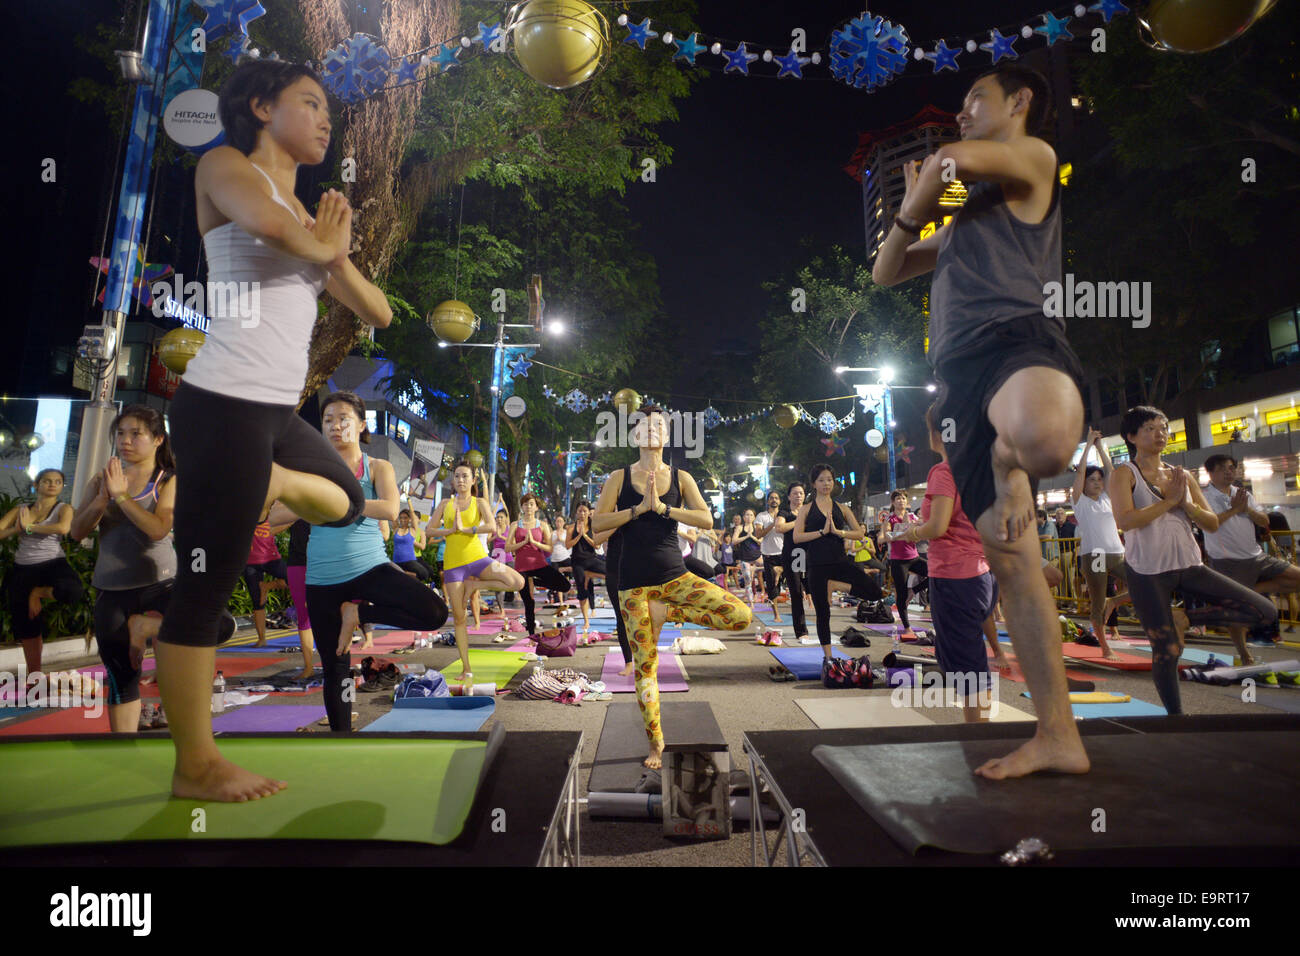 Singapour, Singapour. 1er novembre 2014. Les Yogis assister à la classe de yoga sur Orchard Road, un quartier commerçant bien connu, à Singapour, le 1 novembre 2014. Depuis octobre dernier, l'Orchard Road ici est fermé pendant quelques heures le premier samedi de chaque mois pour les yogis de la pratique. © puis Chih Wey/Xinhua/Alamy Live News Banque D'Images